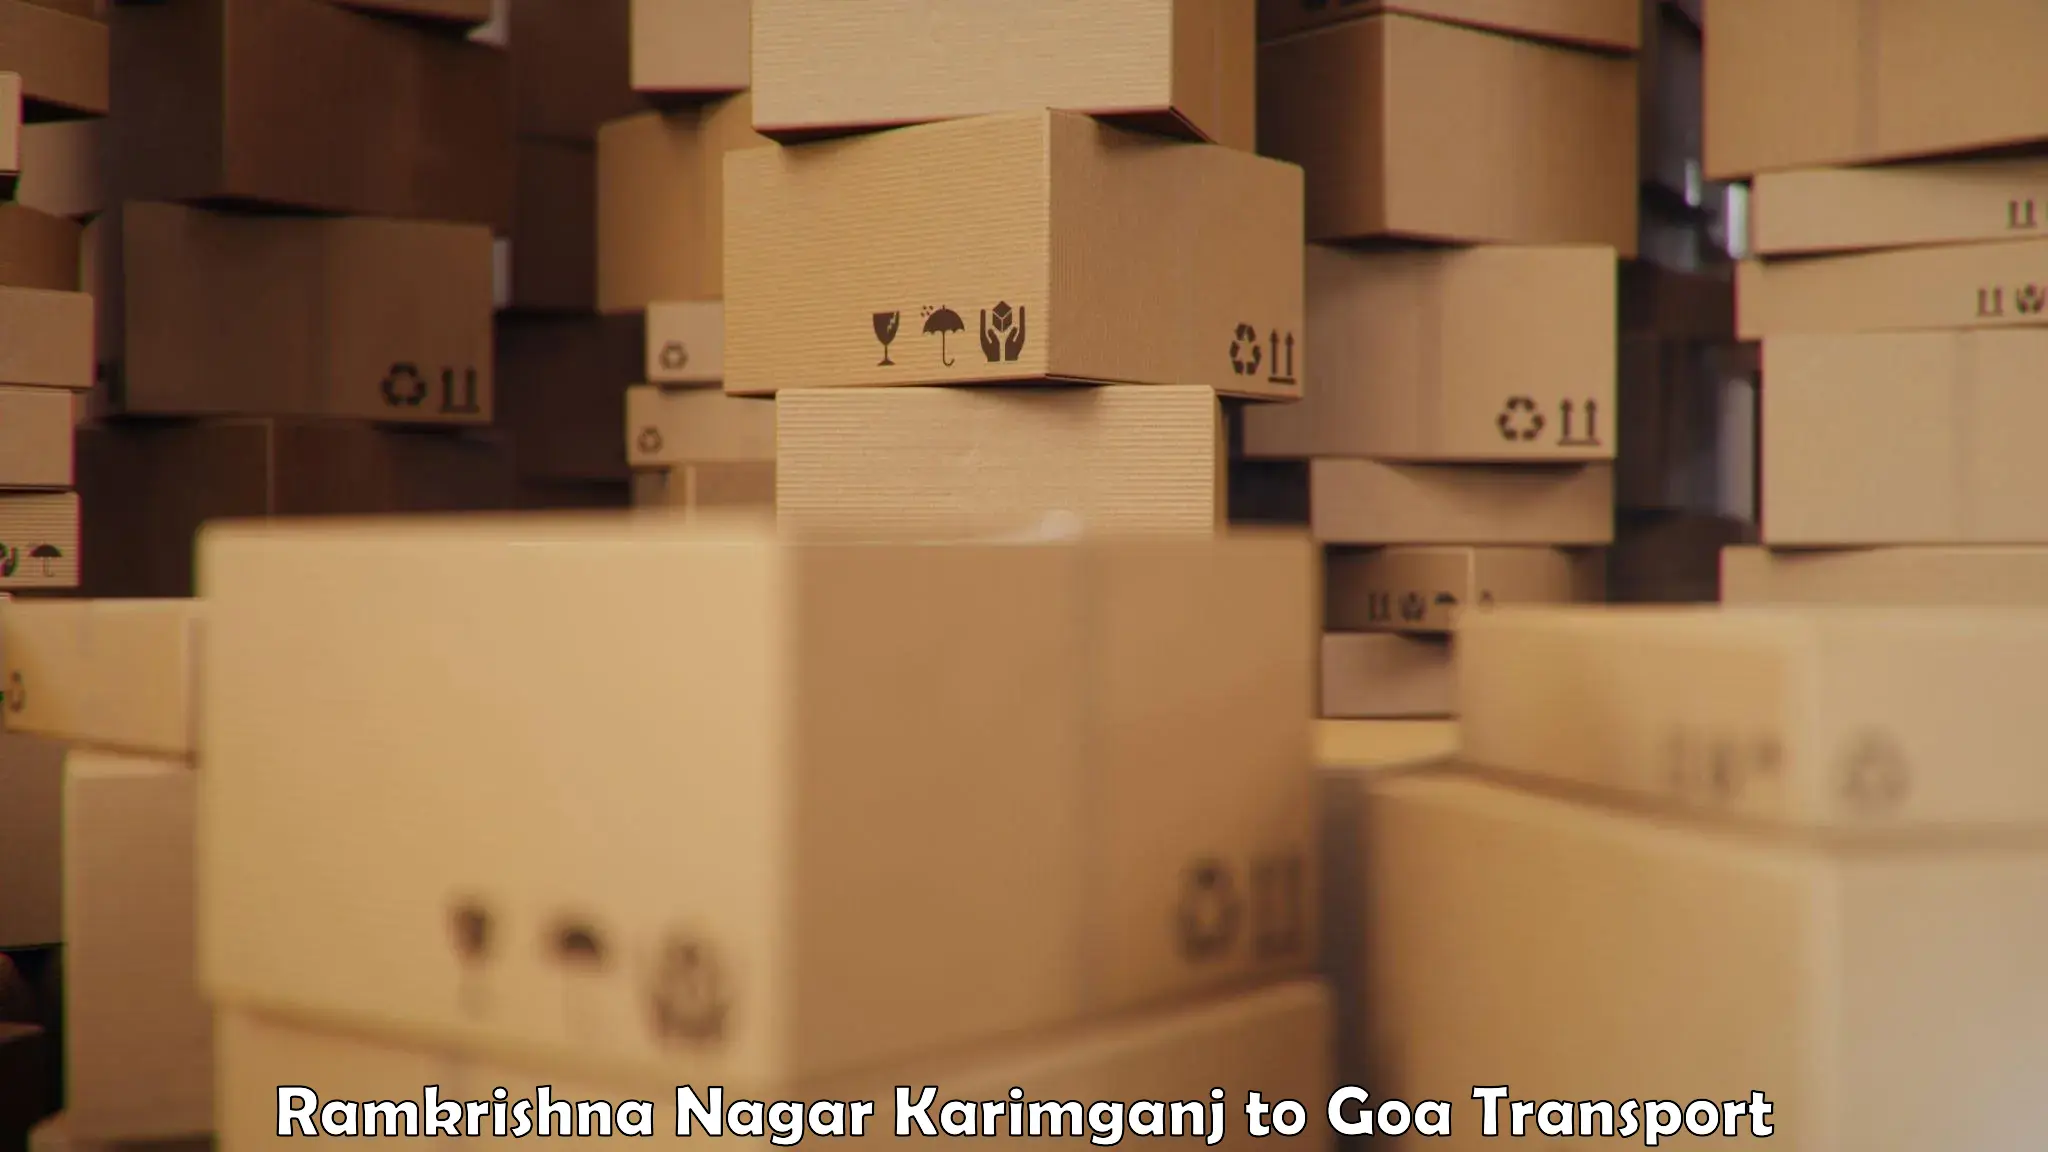 Shipping partner Ramkrishna Nagar Karimganj to Panjim